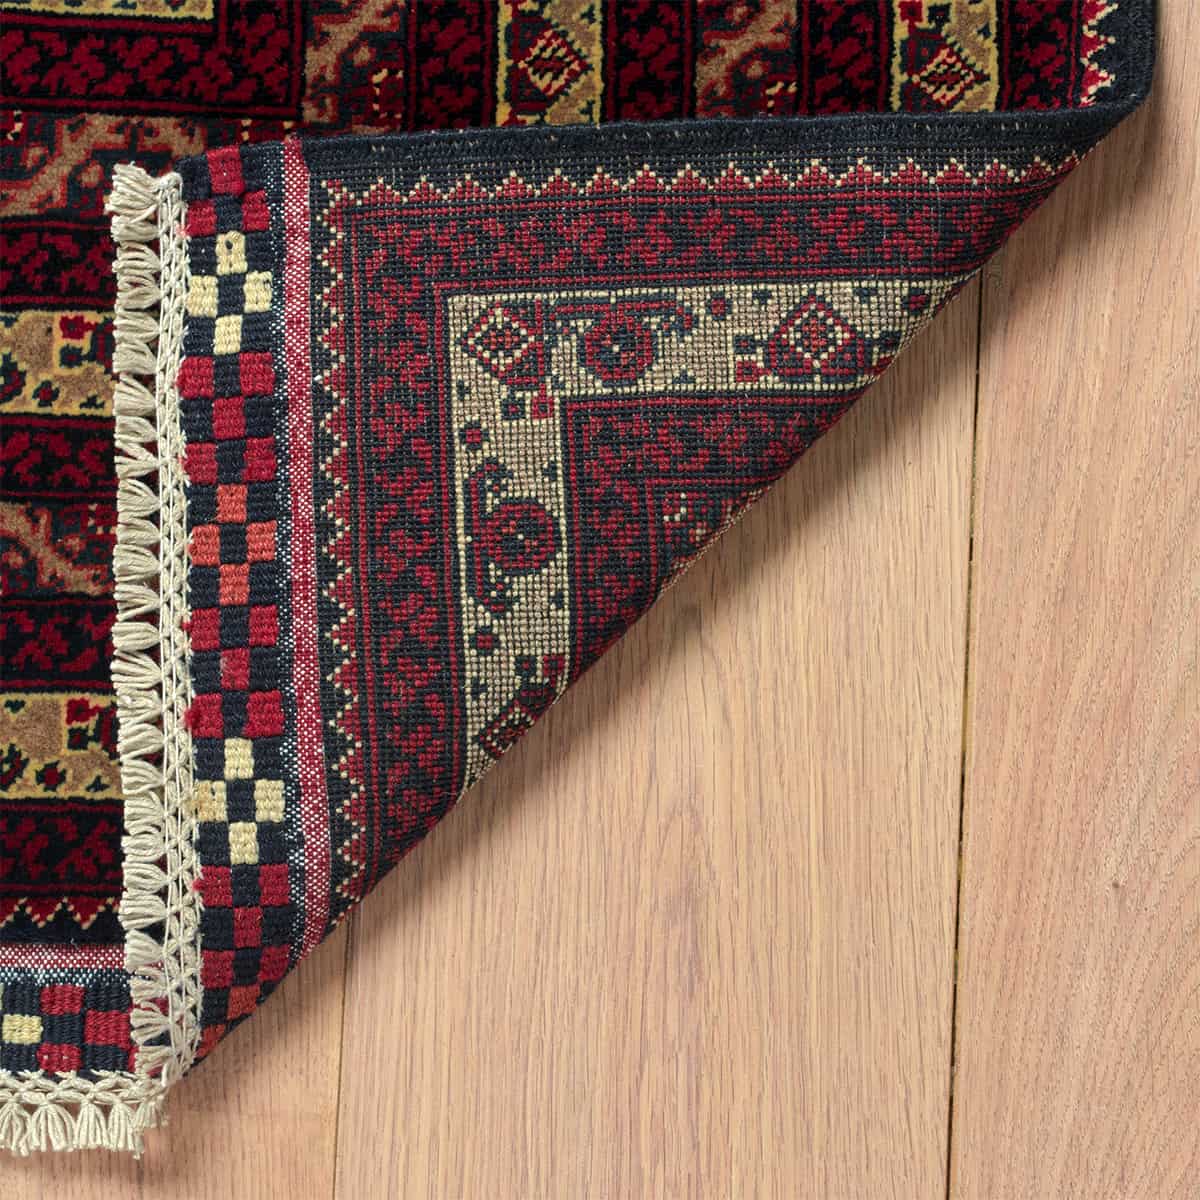  אפגני באשיר 00 אדום 198x282 | השטיח האדום 